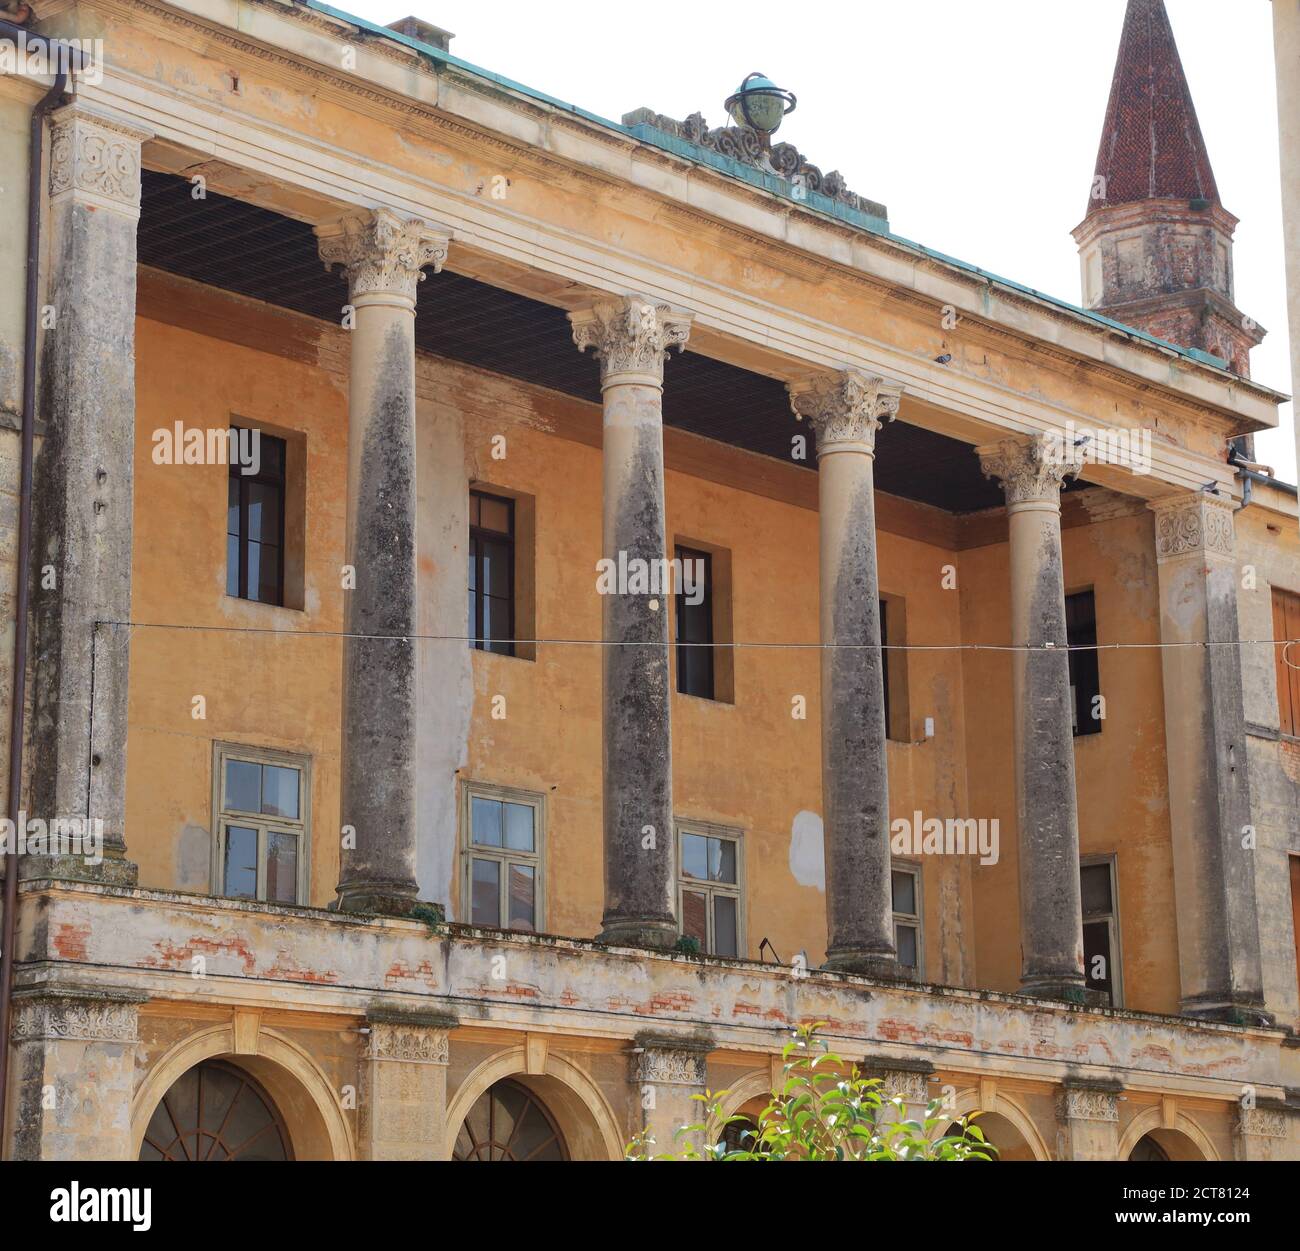 Historic building facade, Castelfranco Veneto Stock Photo